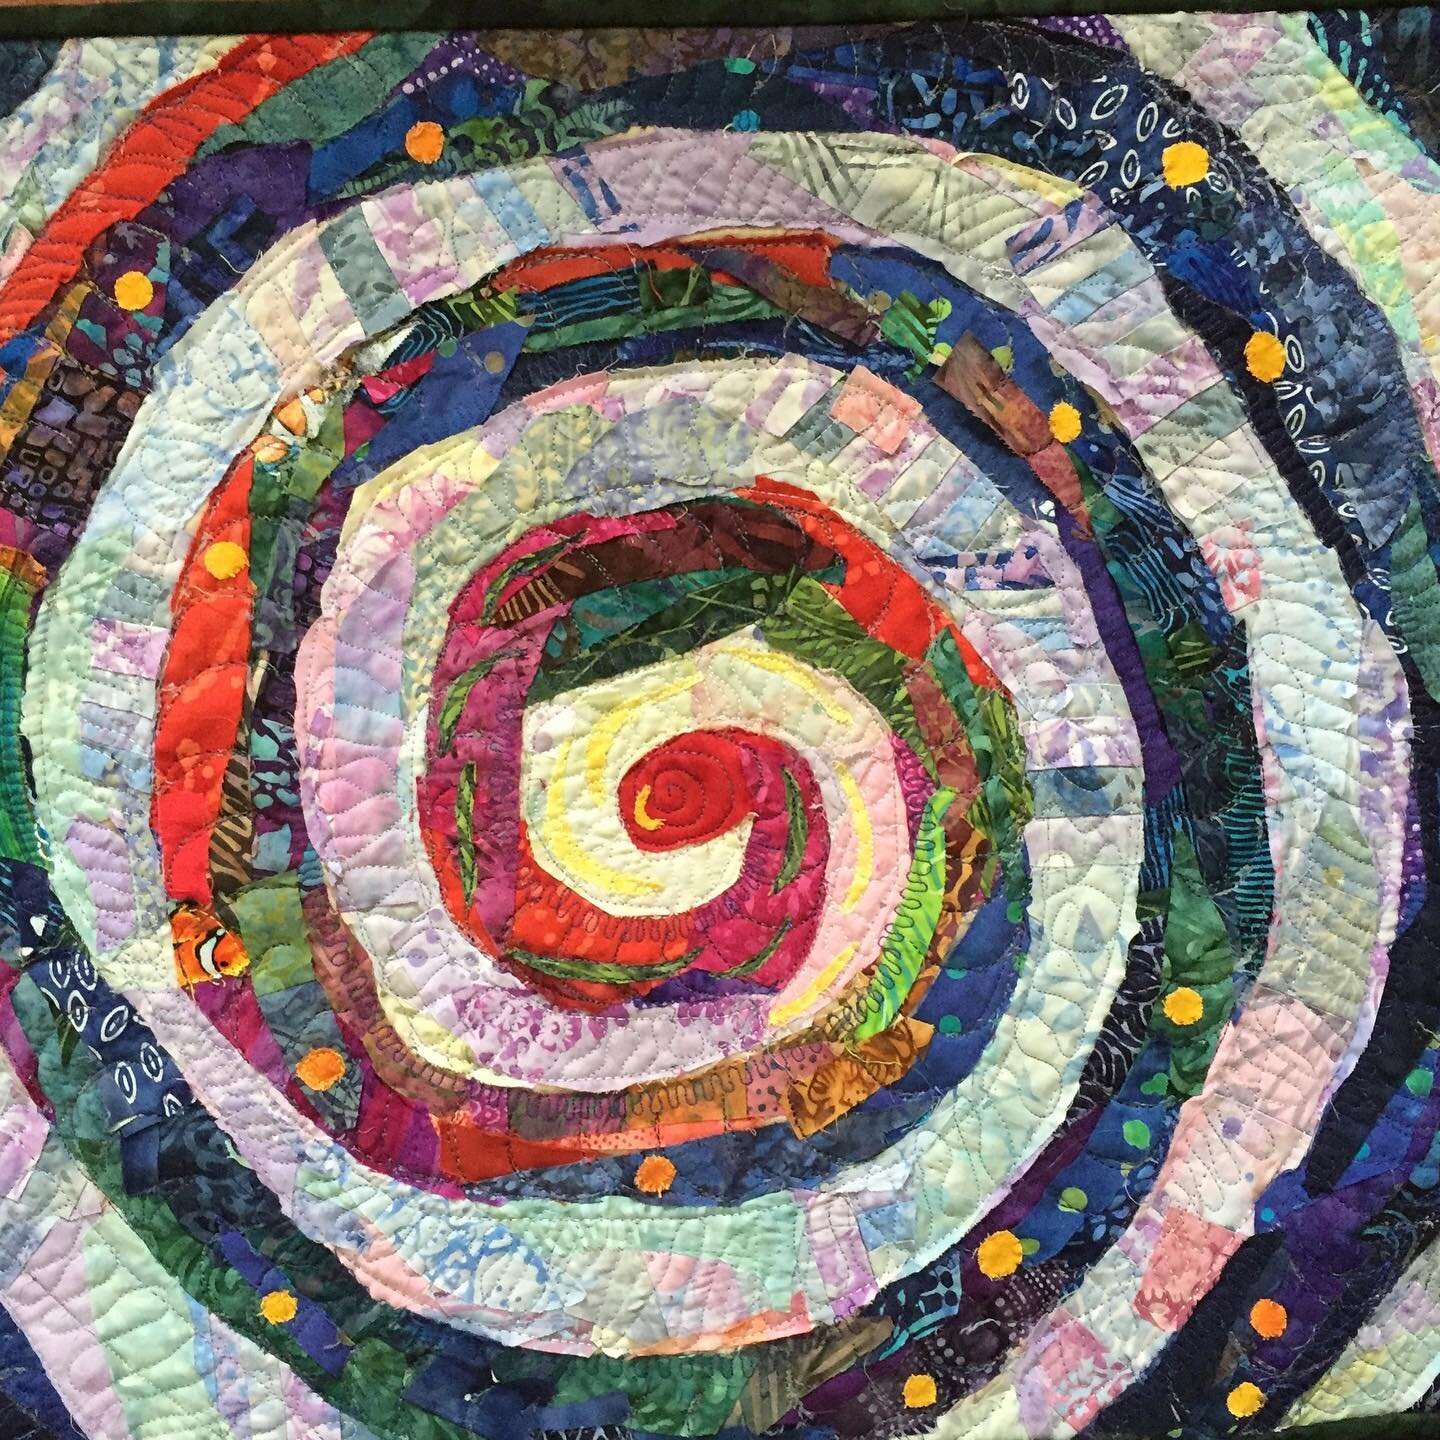 Fluids. The spiral of life. #thebodyminddance #bodymindcentering #embodiedanatomy #artquilt